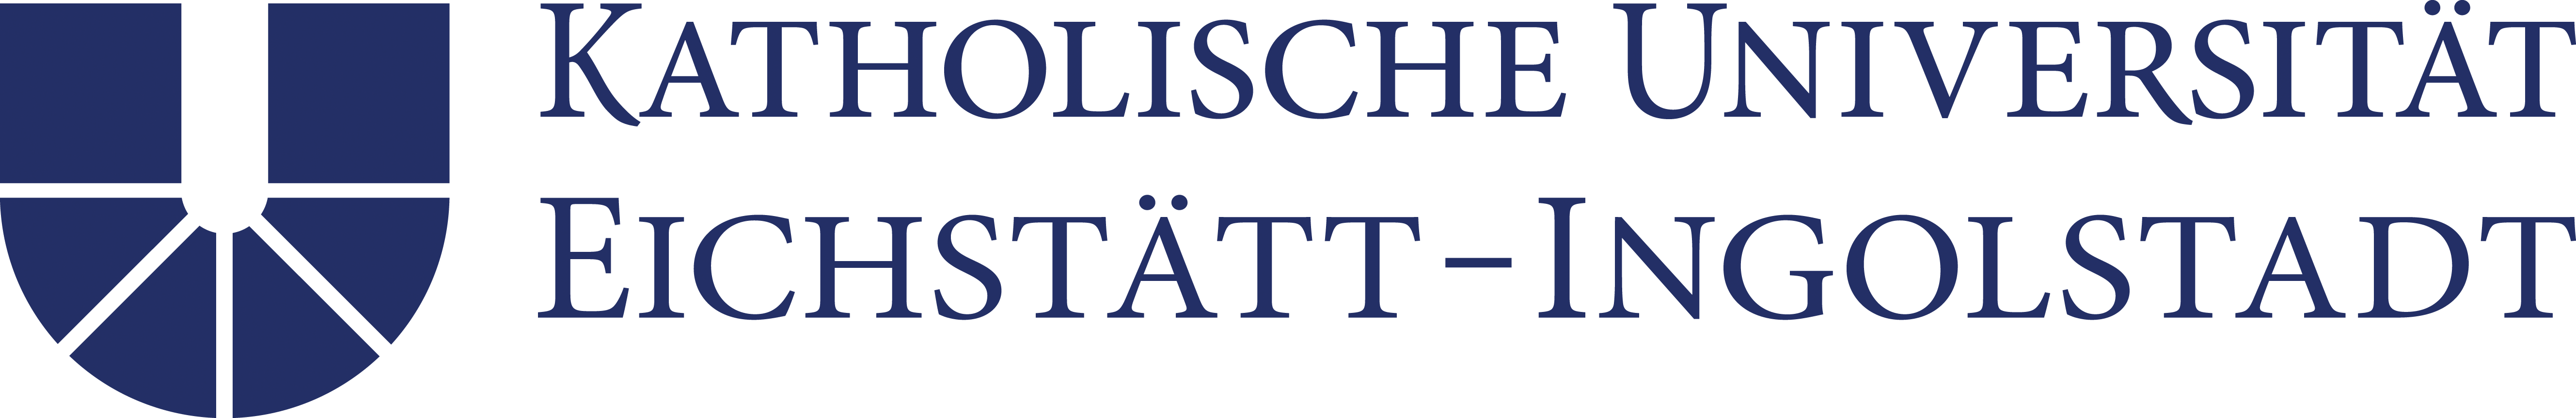 katholische-universiat-eichstatt-ingolstadt